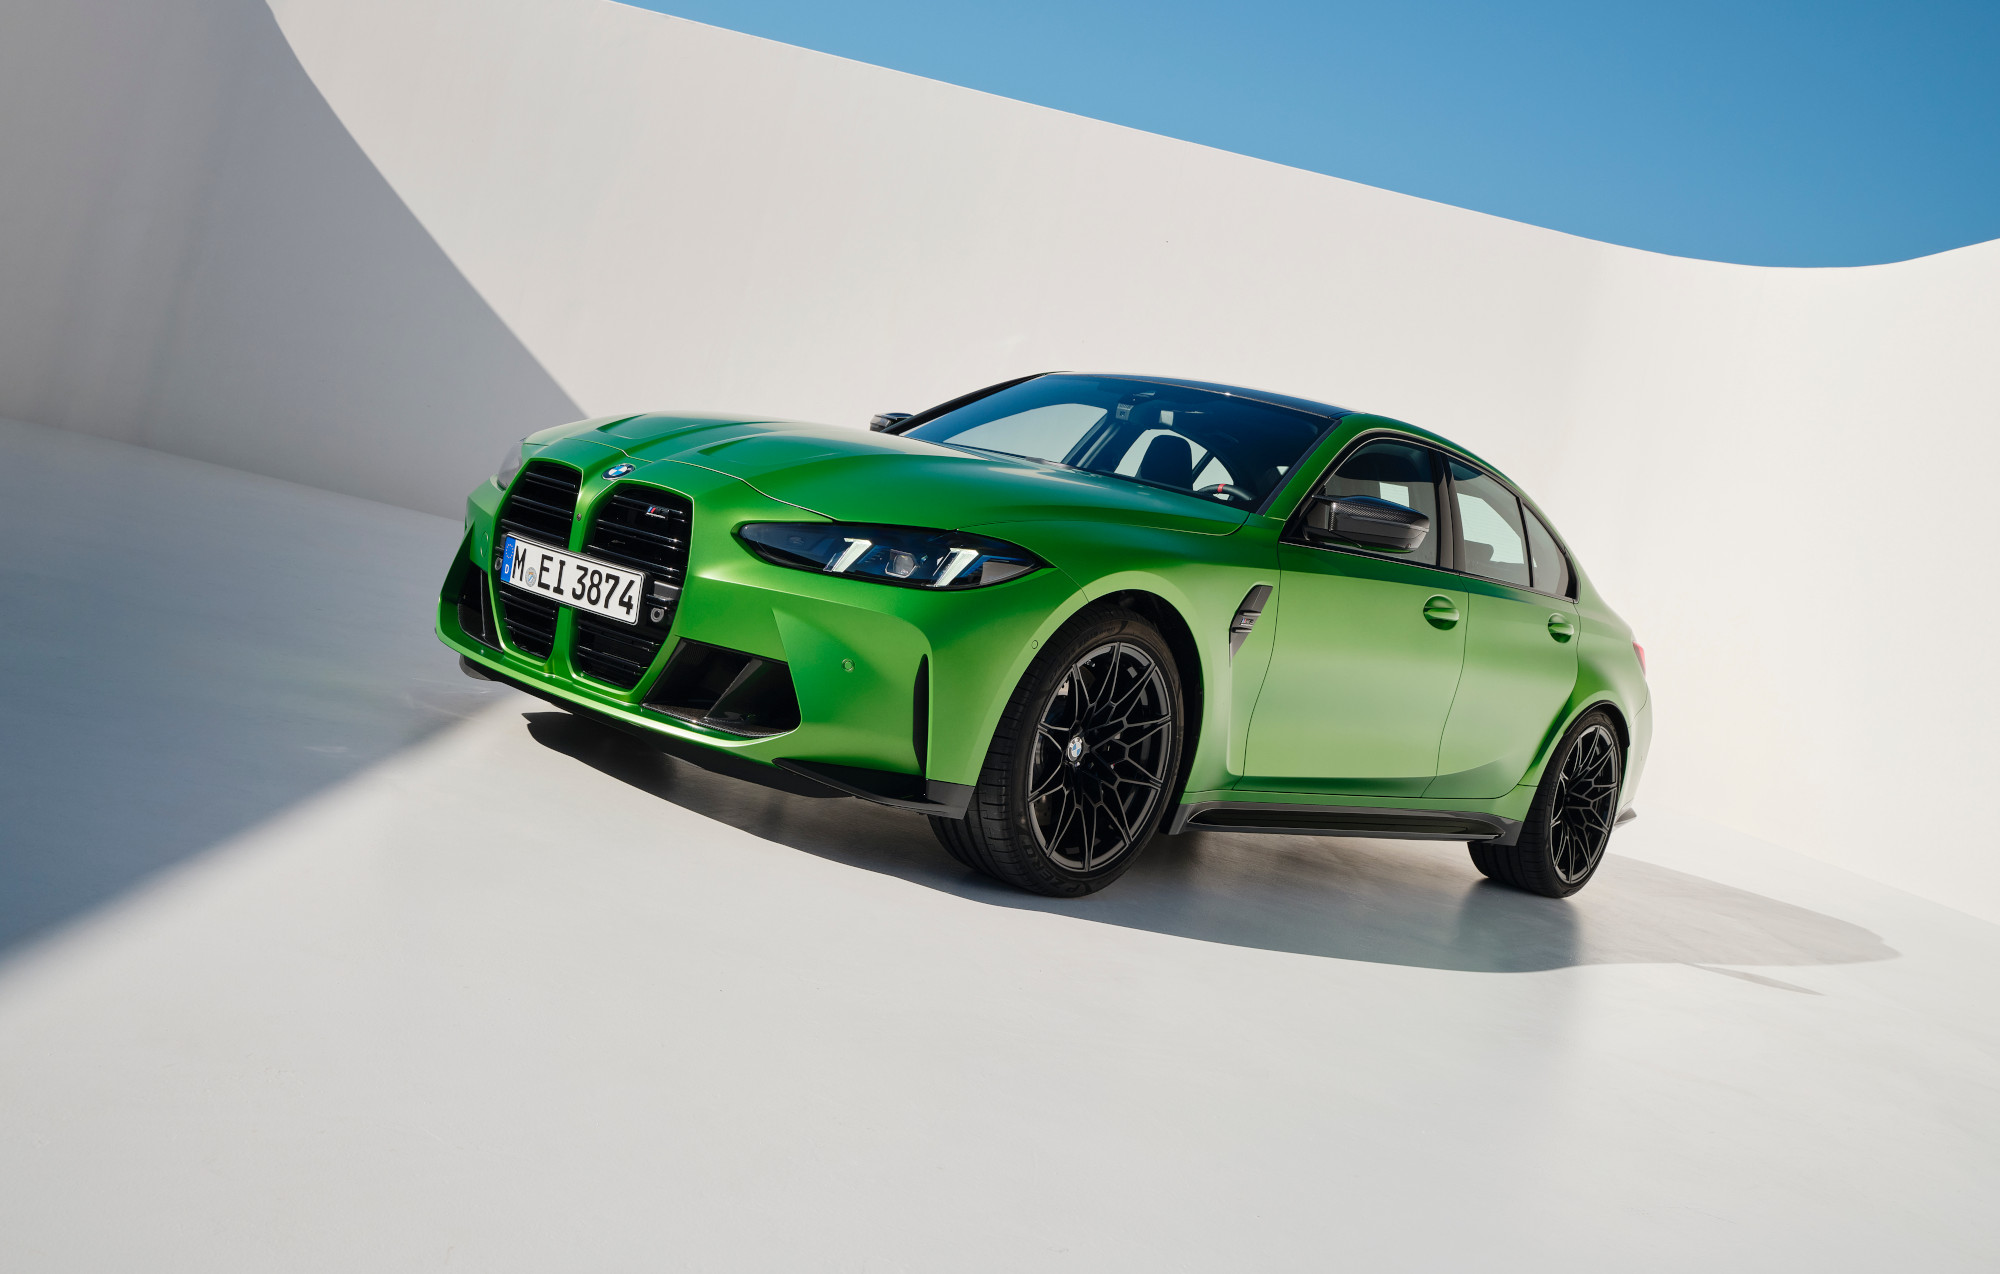 BMW M3 sedán, el referente en deportividad